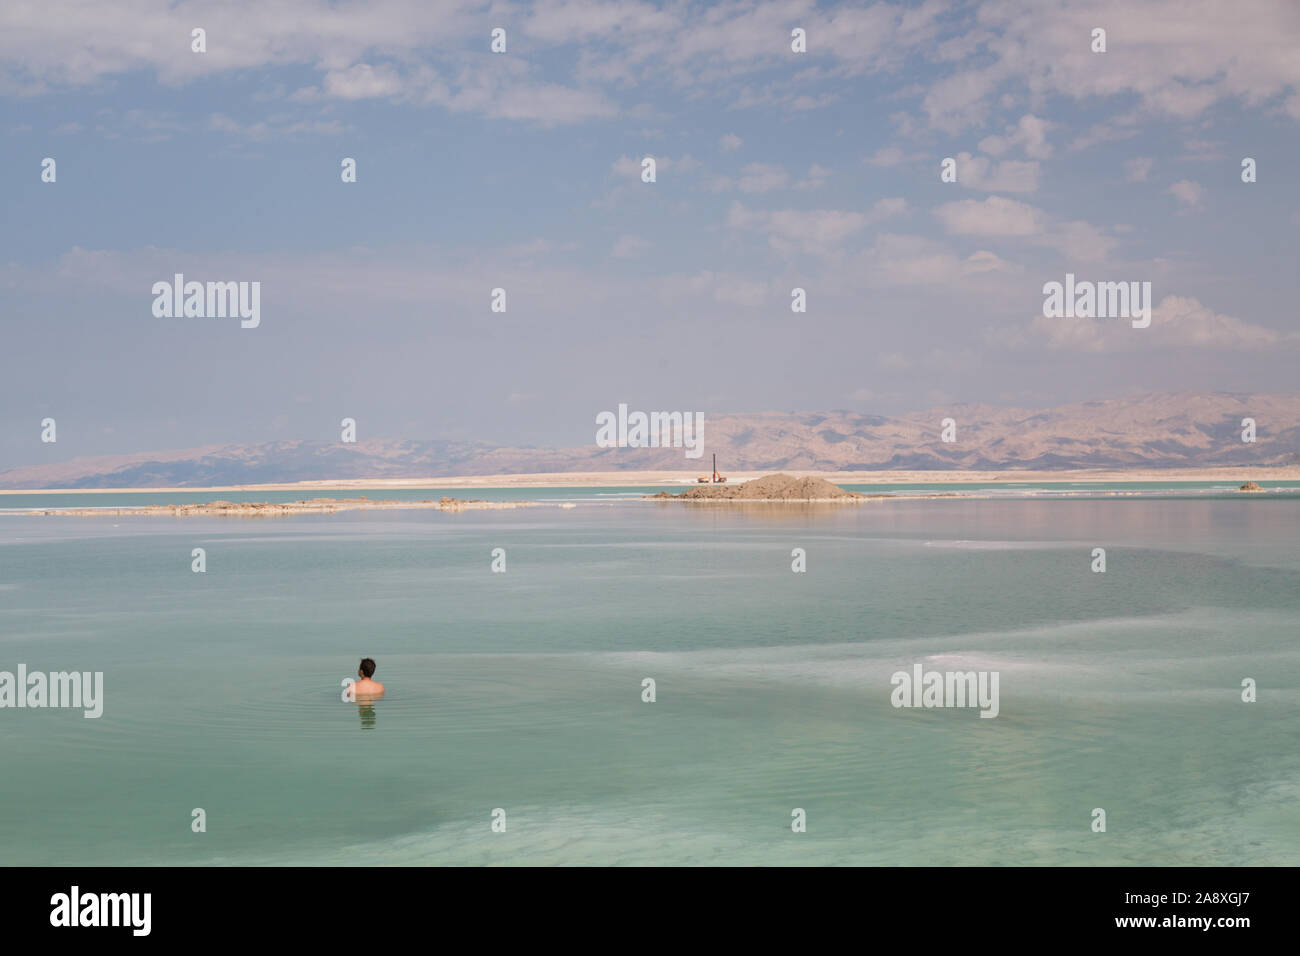 Vistas del Mar Muerto Foto de stock